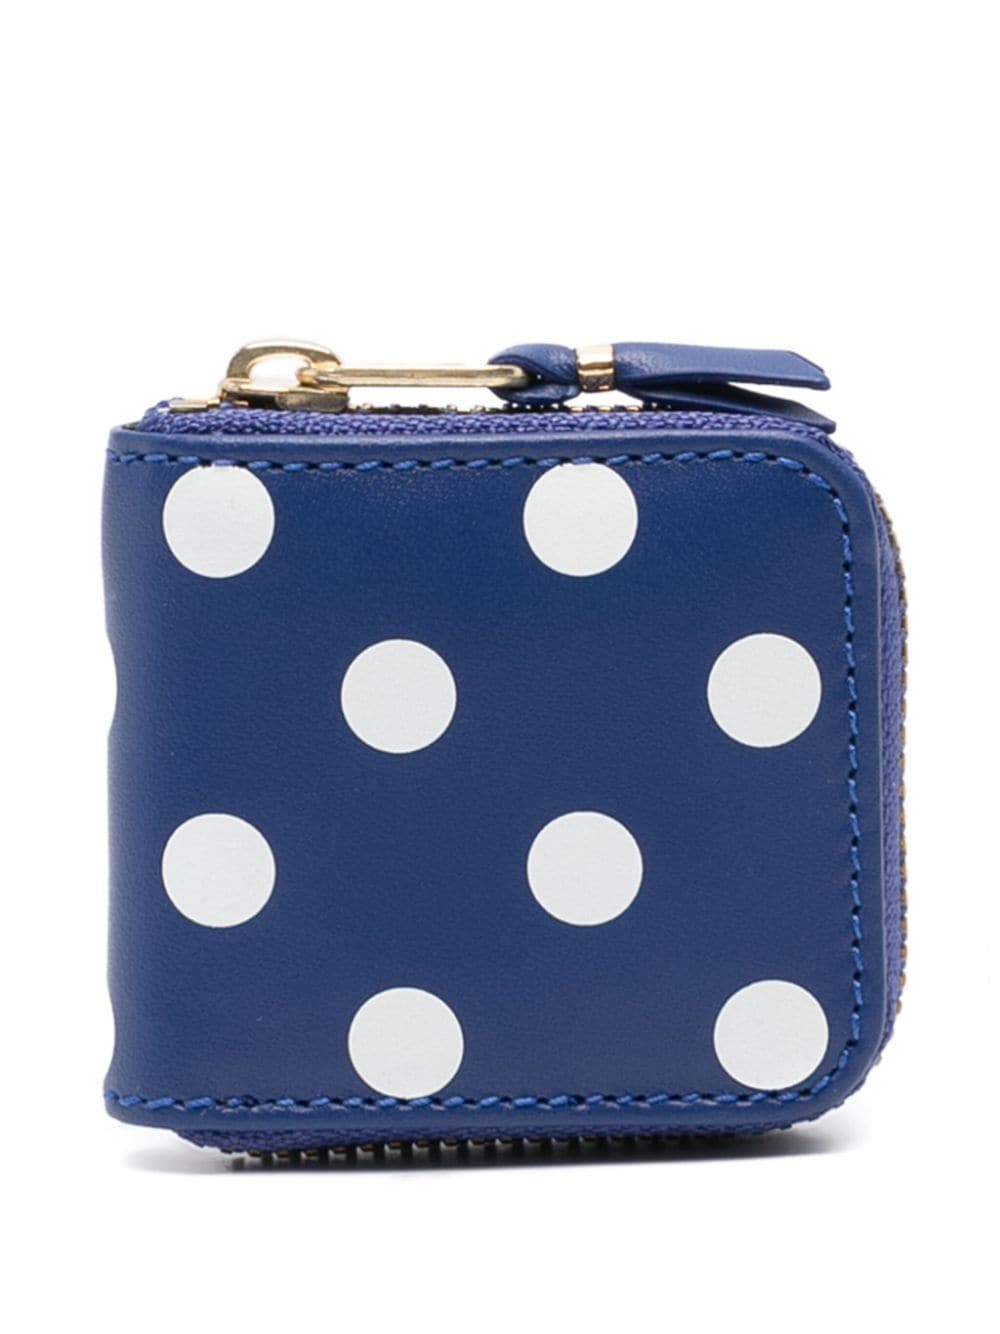 Comme Des Garçons Wallet polka dot leather wallet - Blu